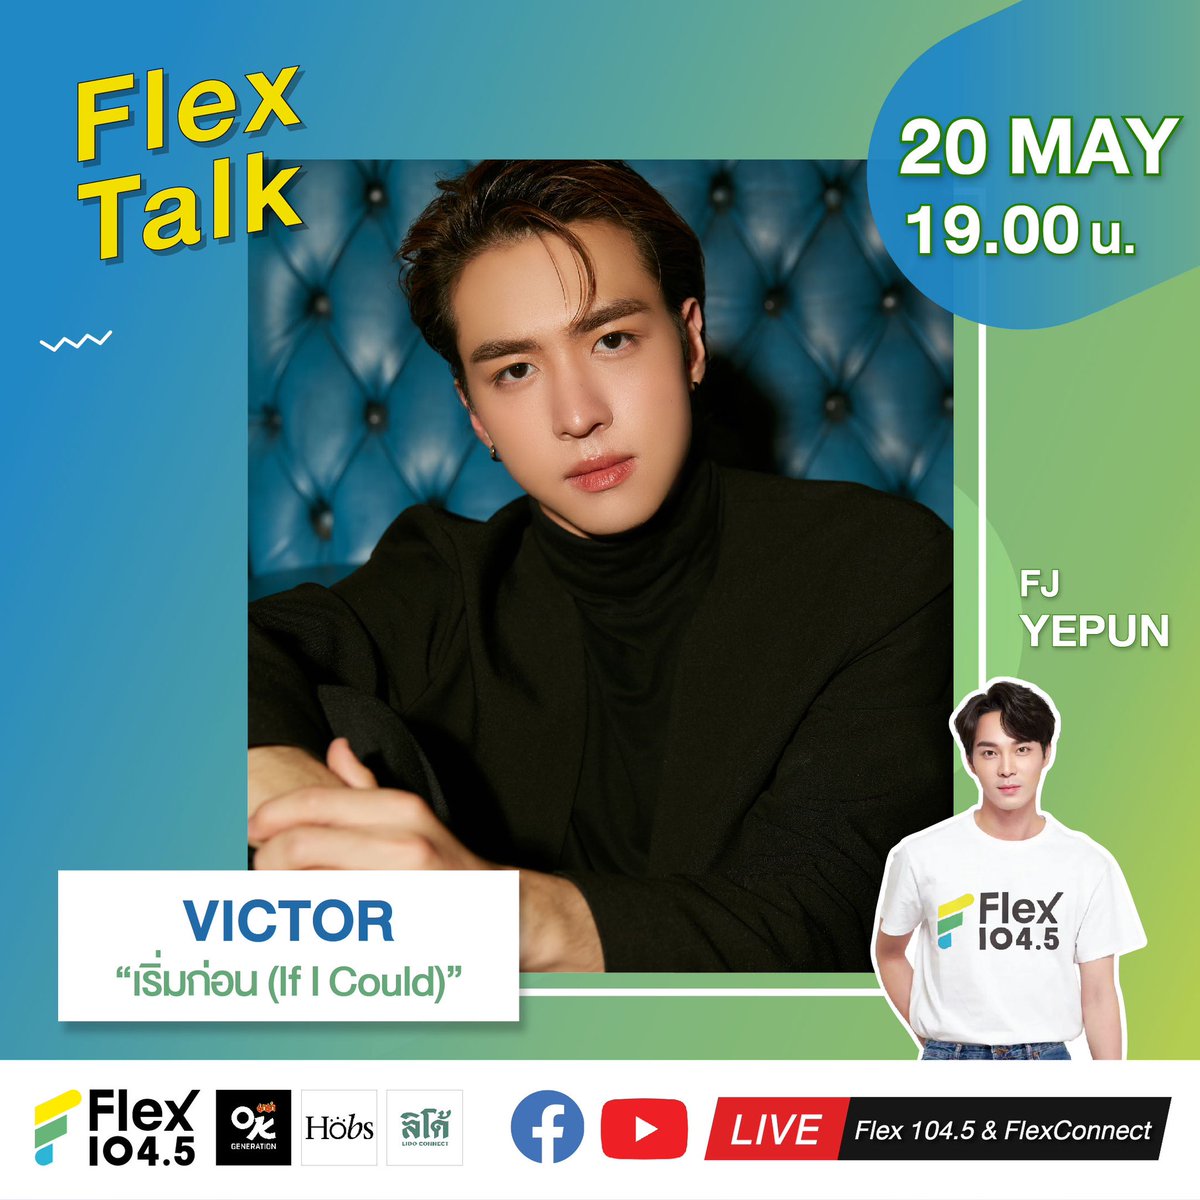 🙏 ภาวนาให้ถึงวันพรุ่งนี้ไวๆ เพราะเป็นวันที่จะได้เจอกับ VICTOR แล้ว😁 ในรายการ Flex Talk วันจันทร์ที่ 20 พฤษภาคมนี้ เวลา 19.00 น. ทาง
🎧 คลื่น Flex 104.5
🔴 LIVE ที่ Facebook และ Youtube FlexConnect
.
#Victor_เริ่มก่อน #PROXIEVictor #PROXIEth #bROTHERSMUSIC
#FlexTalk #FlexConnect